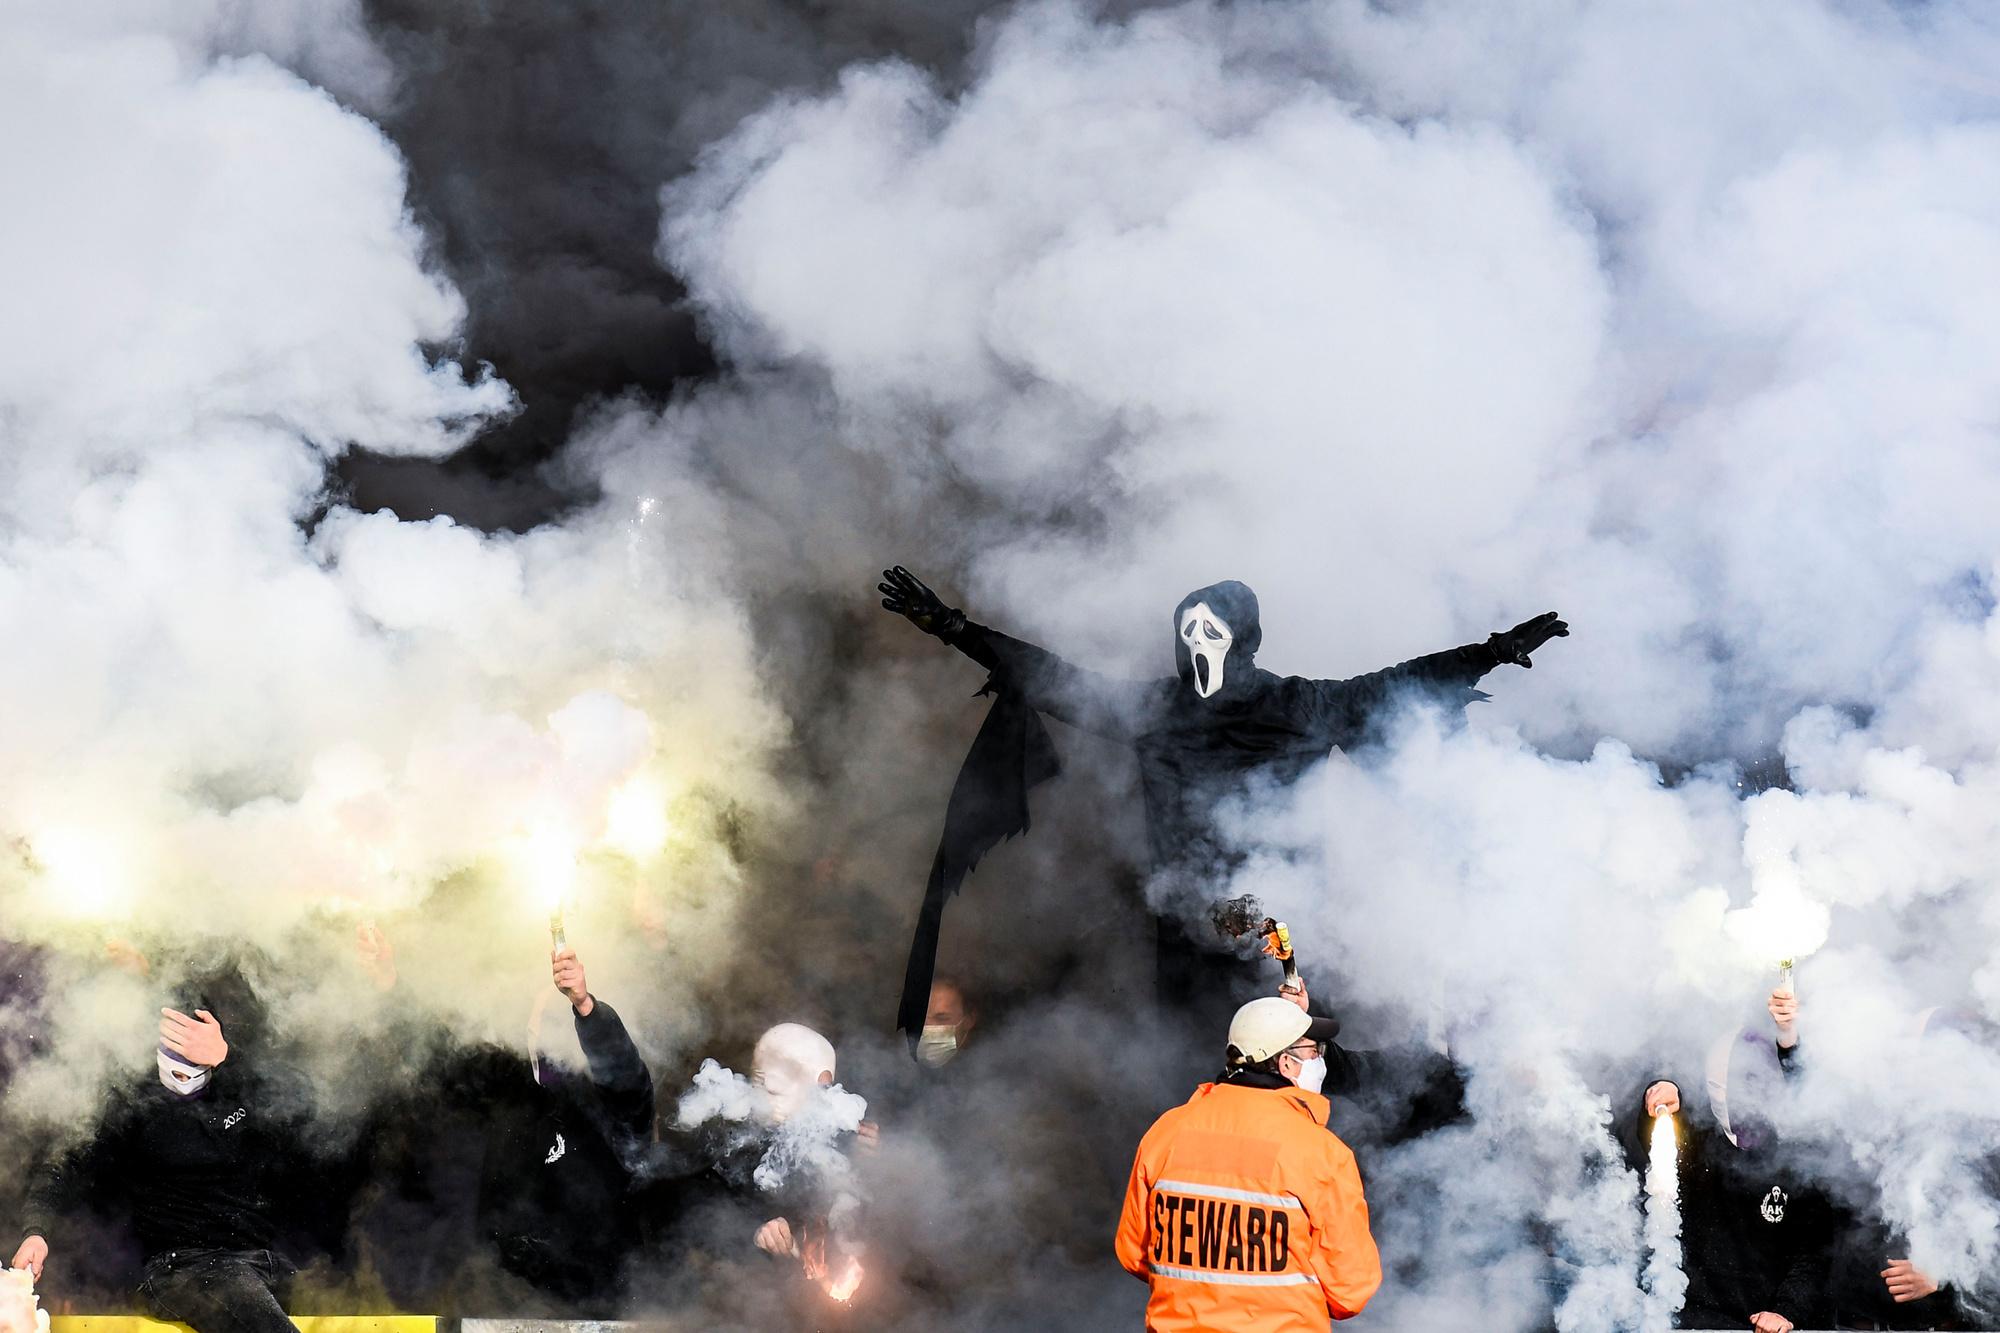 Wat zijn de oorzaken en oplossingen van hooliganisme in België?